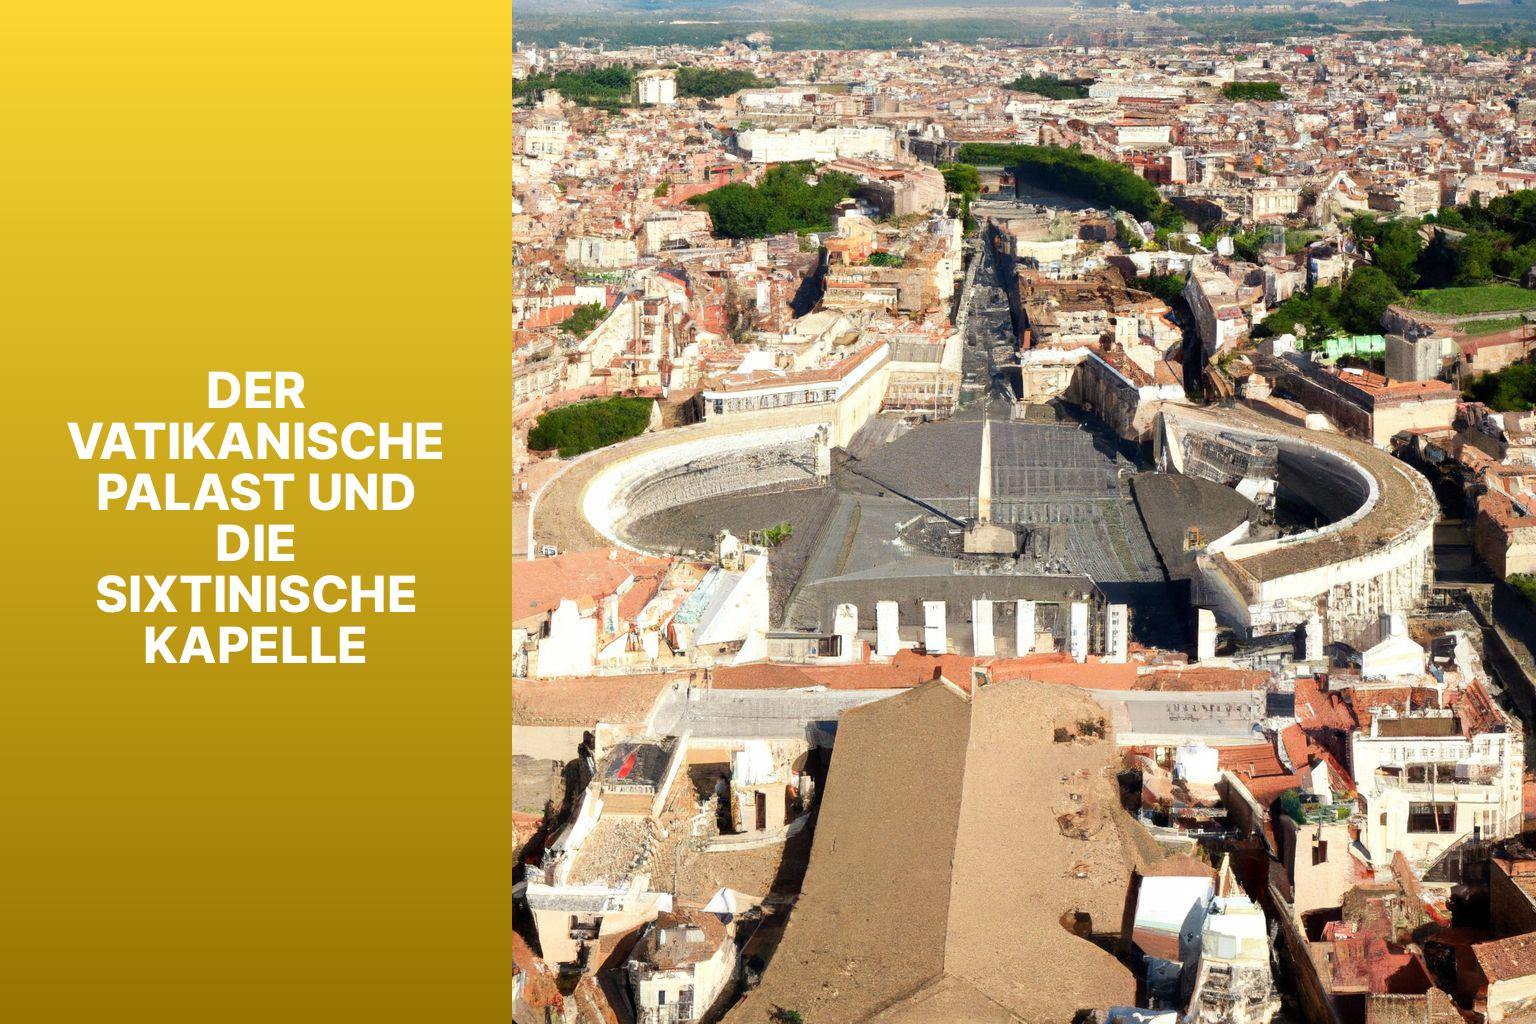 Der Vatikanische Palast und Die Sixtinische Kapelle - Sehenswürdigkeiten in Rom 